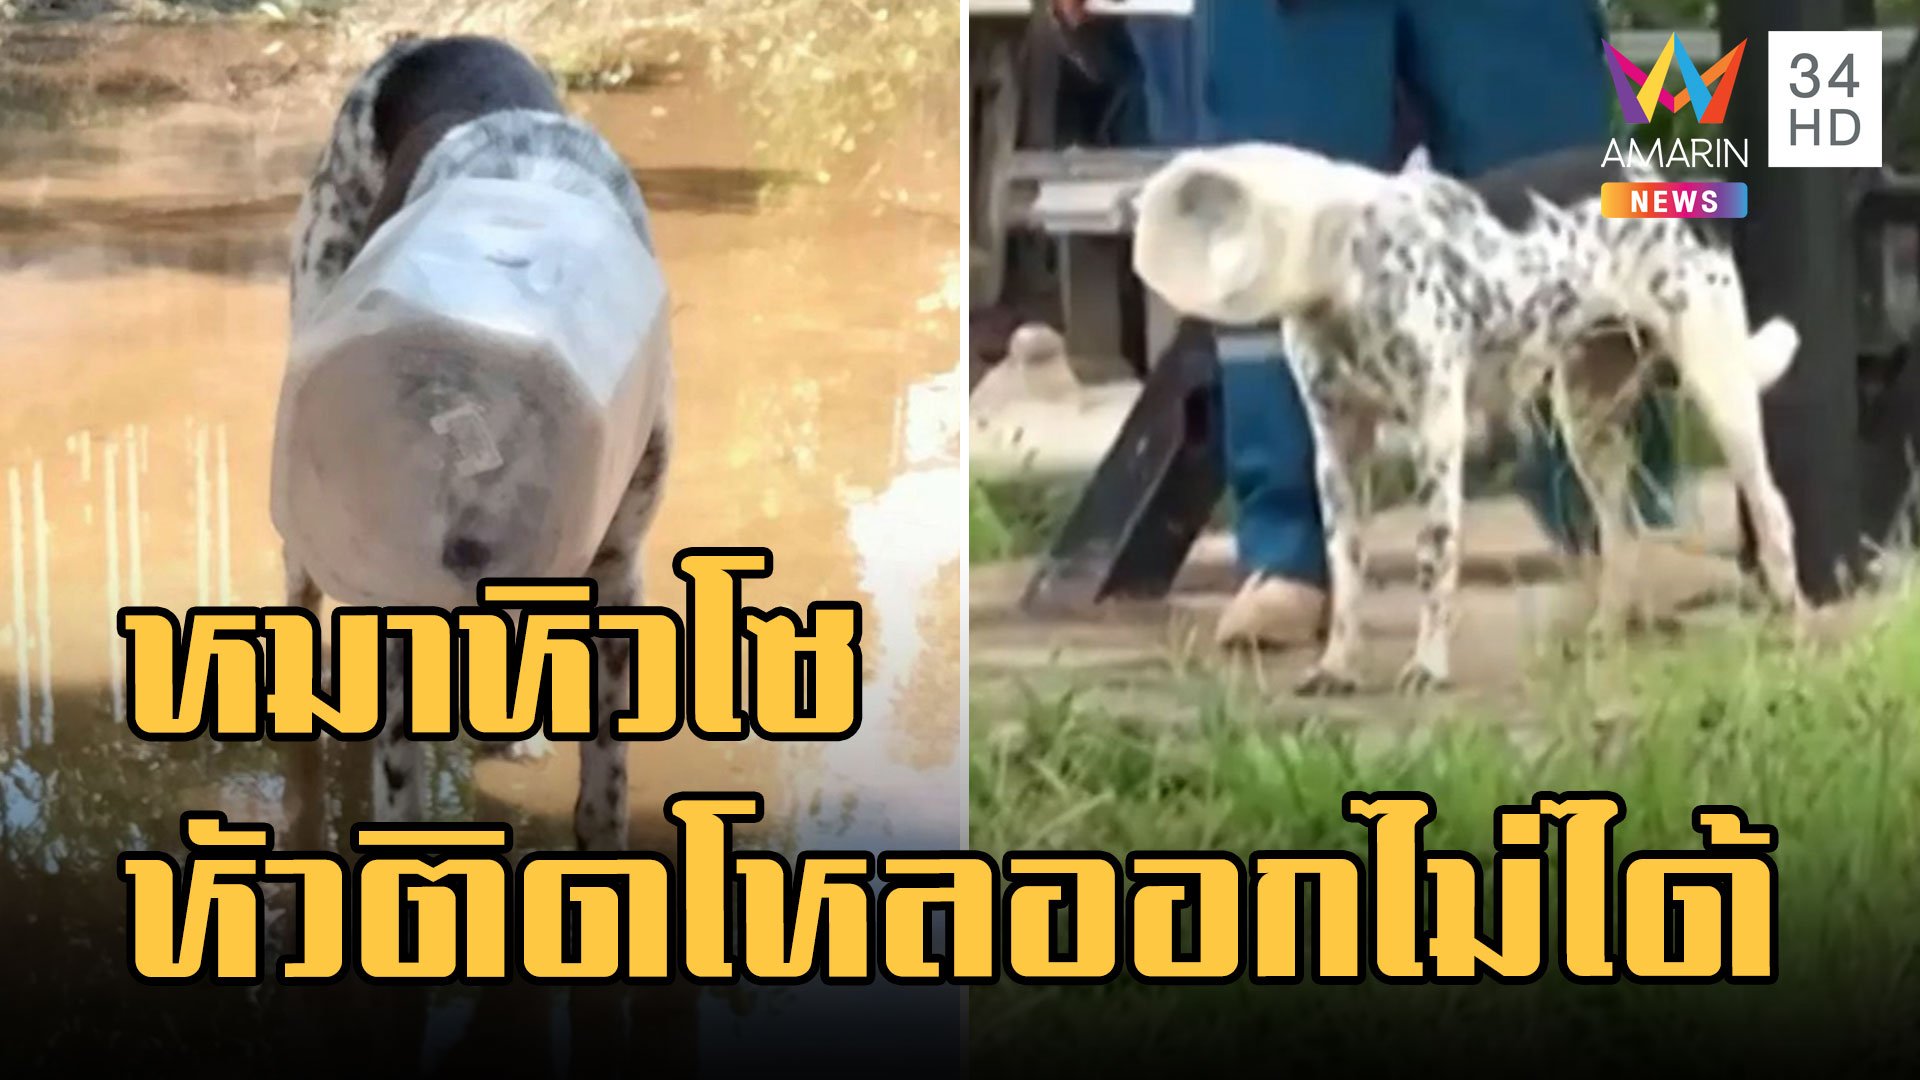 หมาจรจัดหิวโซหัวติดโหลกินไม่ข้าวไม่ได้ ชาวบ้านไล่จับกันวุ่น | ข่าวเที่ยงอมรินทร์ | 26 ส.ค. 65 | AMARIN TVHD34